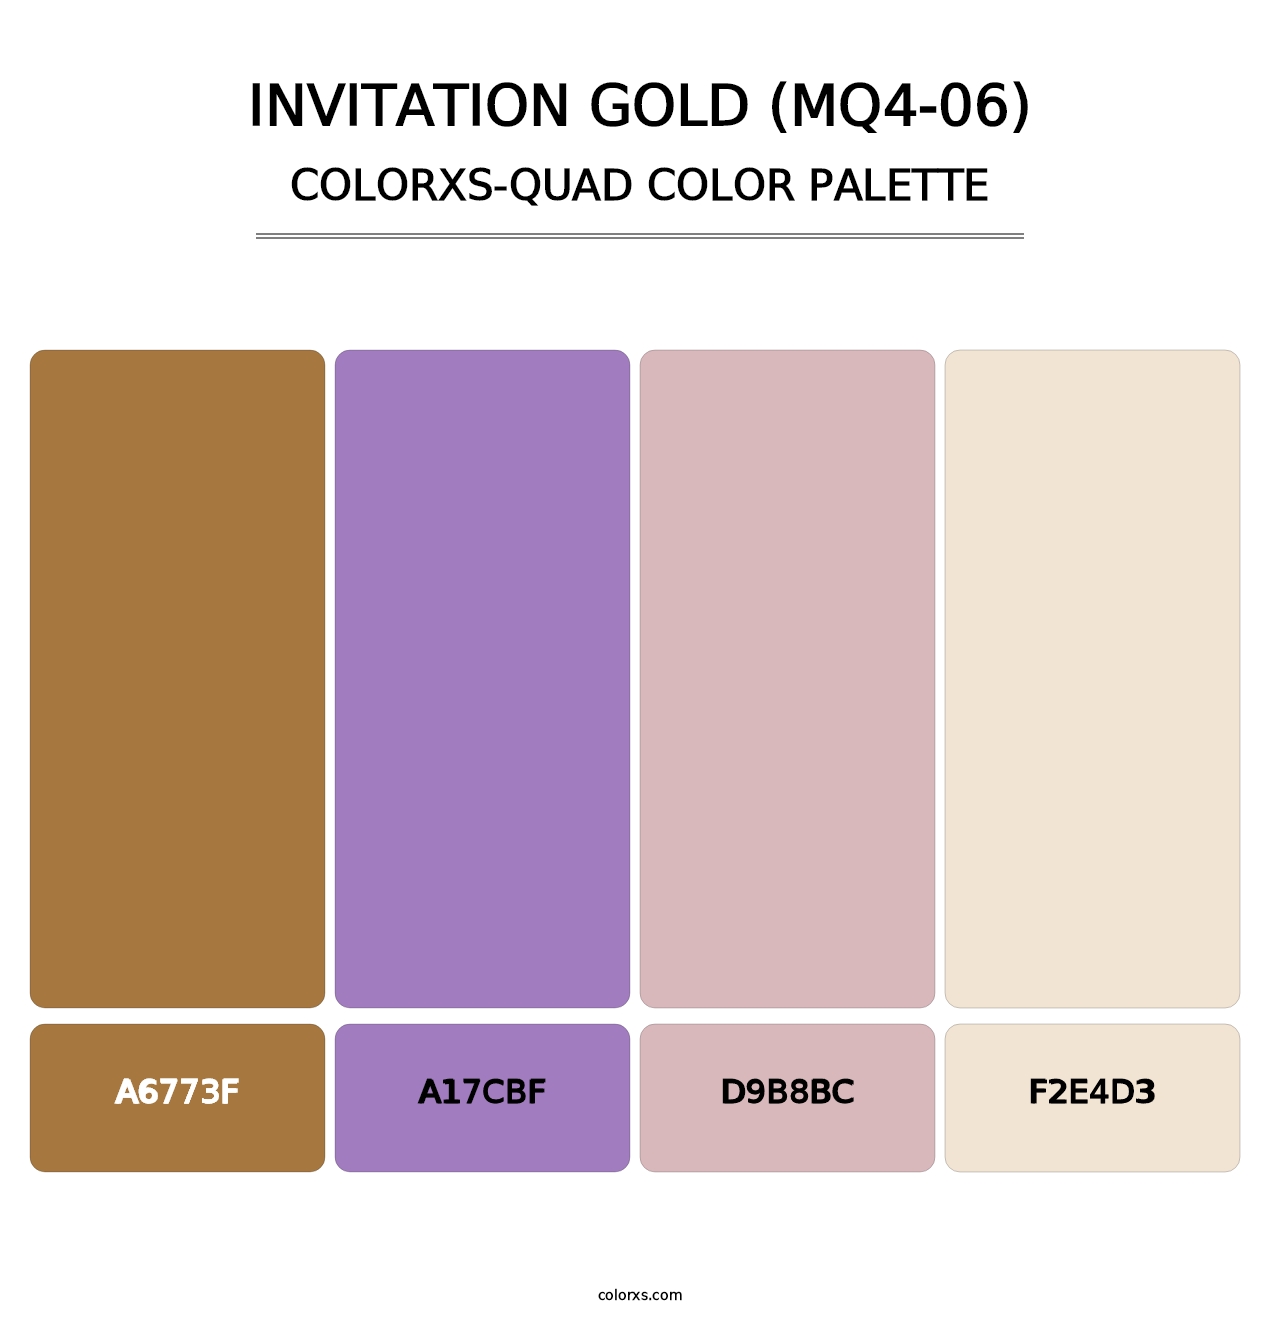 Invitation Gold (MQ4-06) - Colorxs Quad Palette